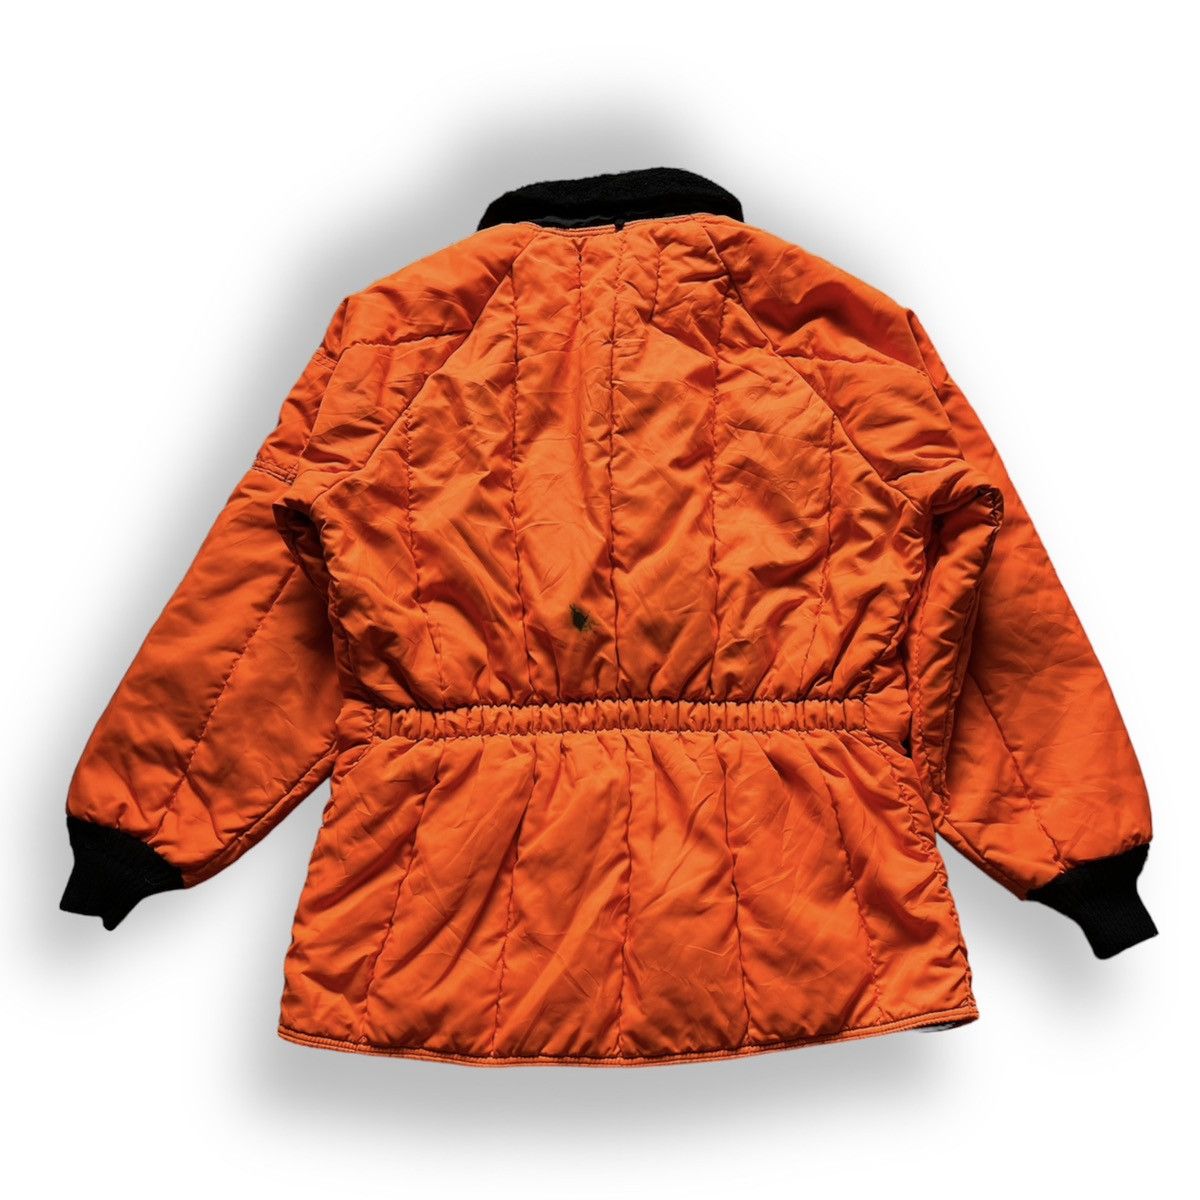 Refrigewear - Refrigiwear Winter Iron Tuff Puffer Jacket - 18